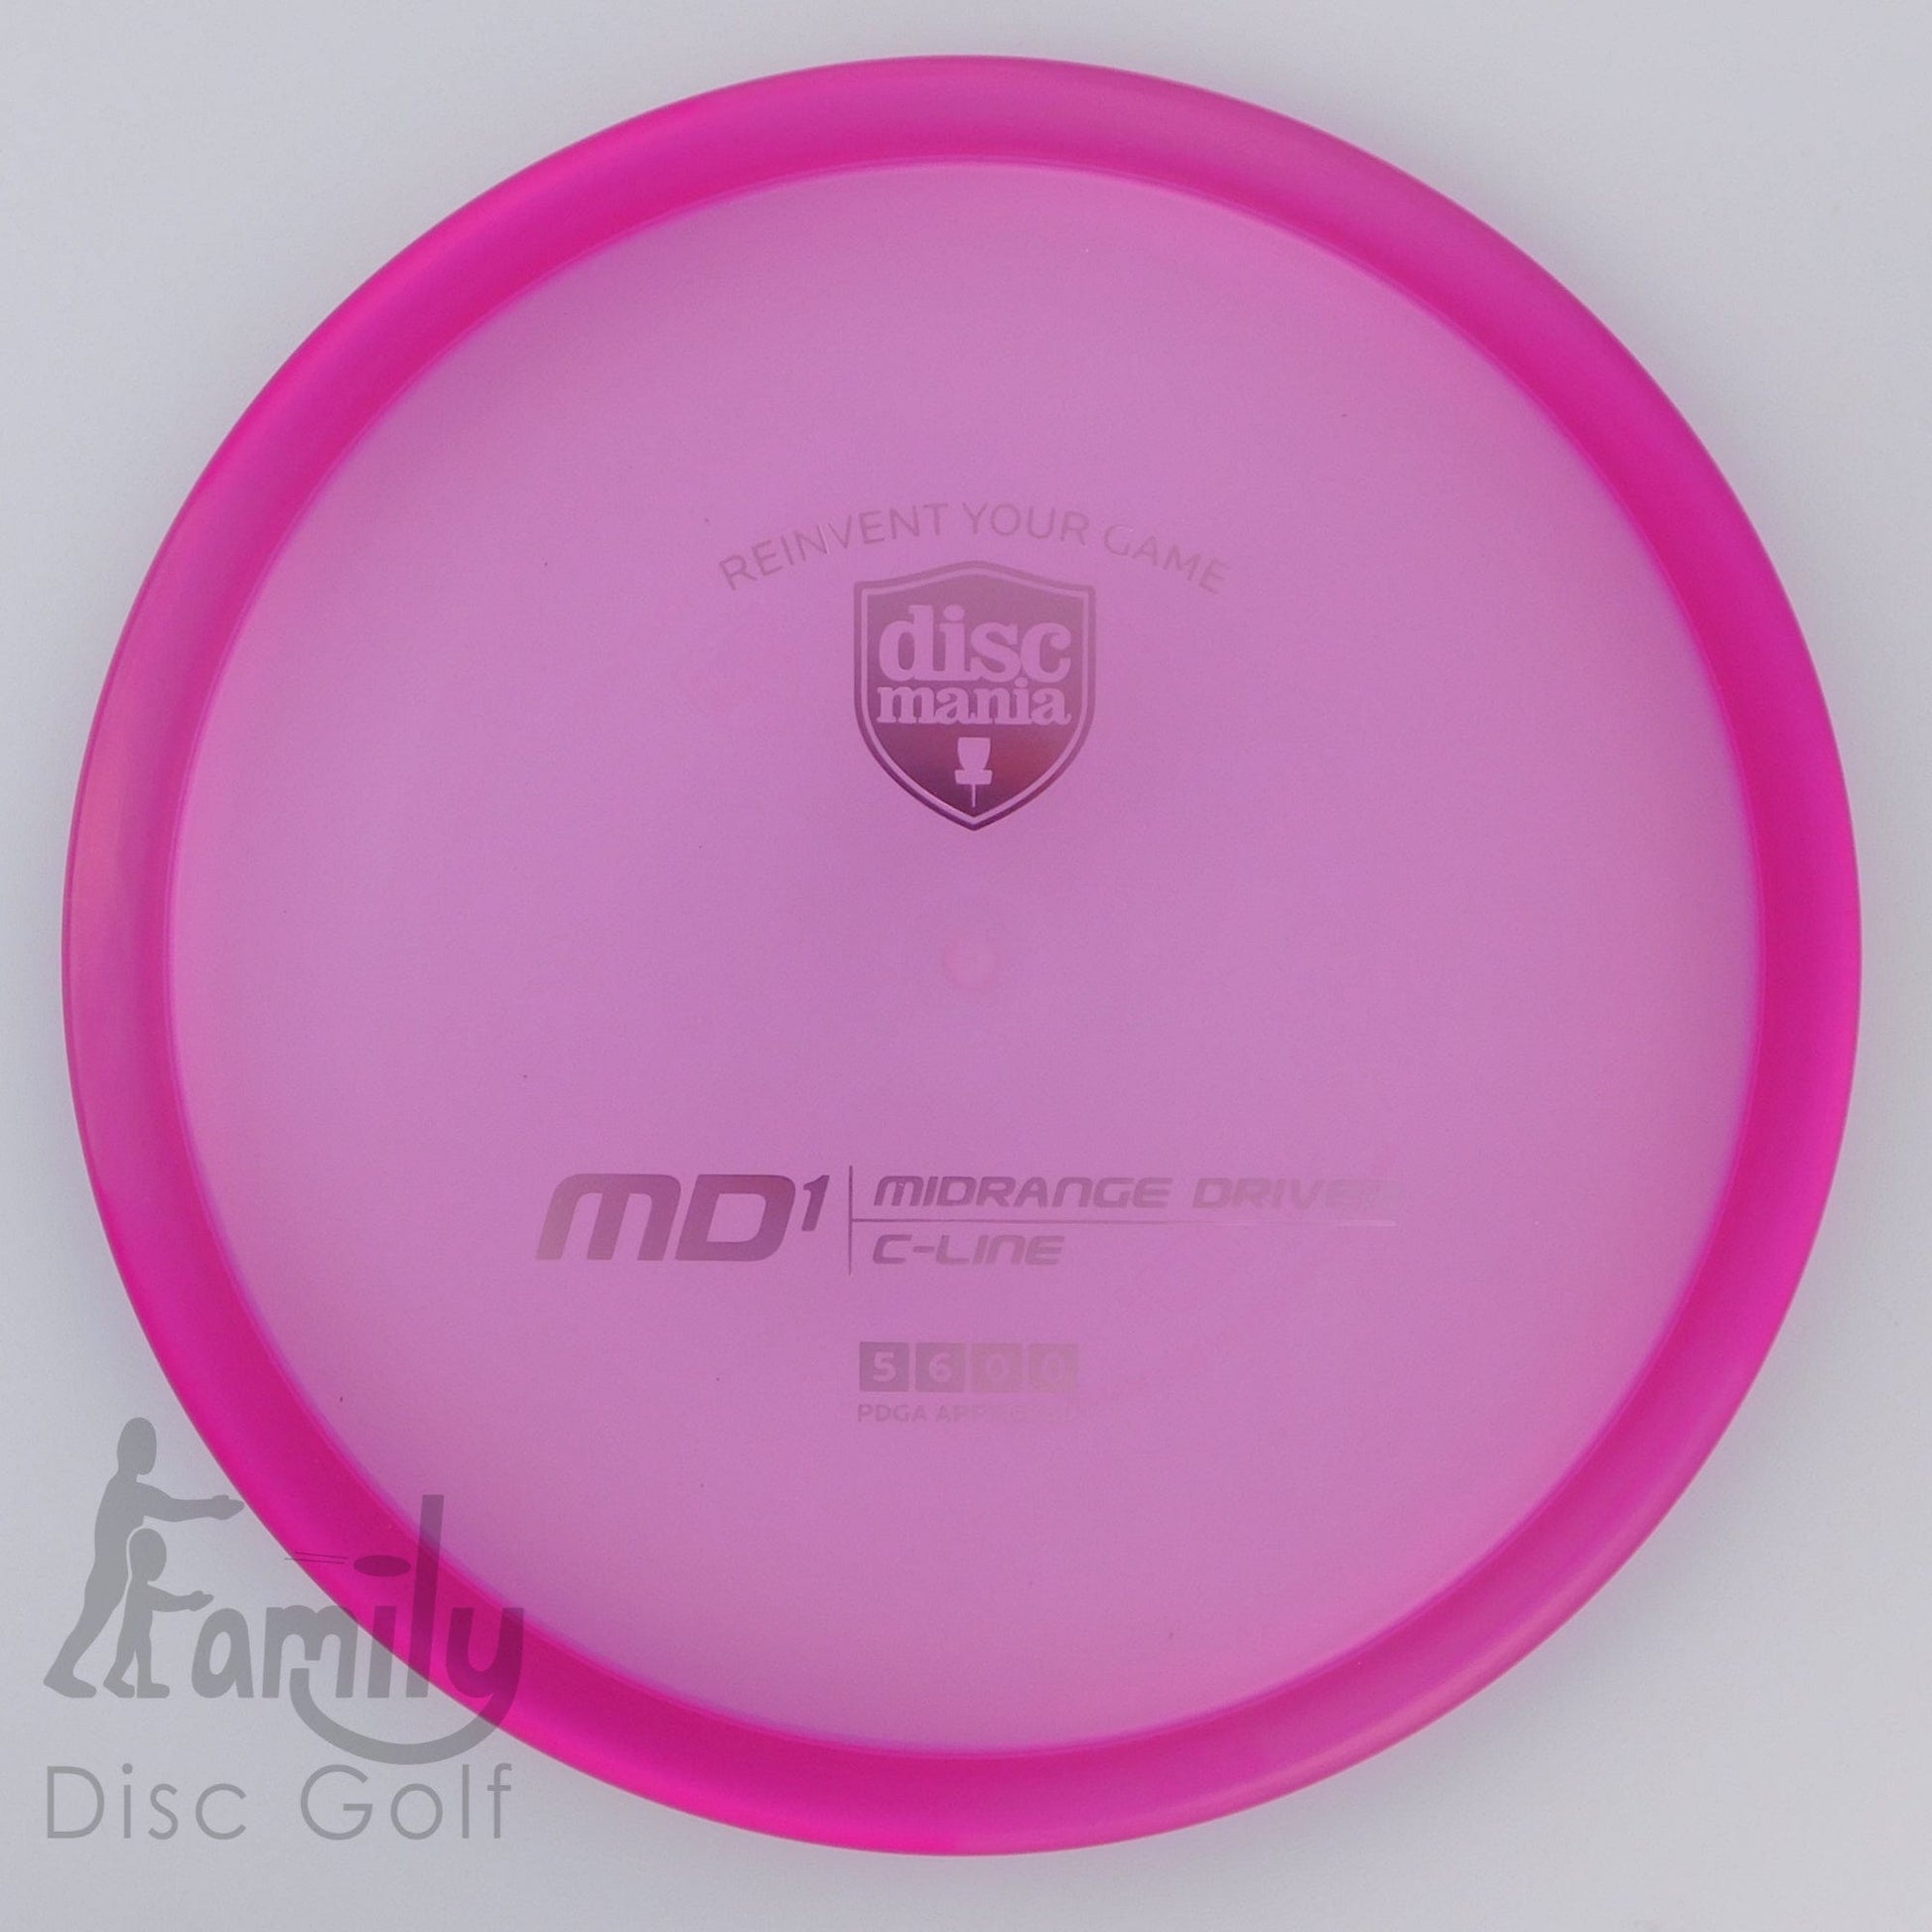 Discmania MD1 - C-Line 5│6│0│0 177.3g - Purple - Discmania MD1 - C-Line - 100970